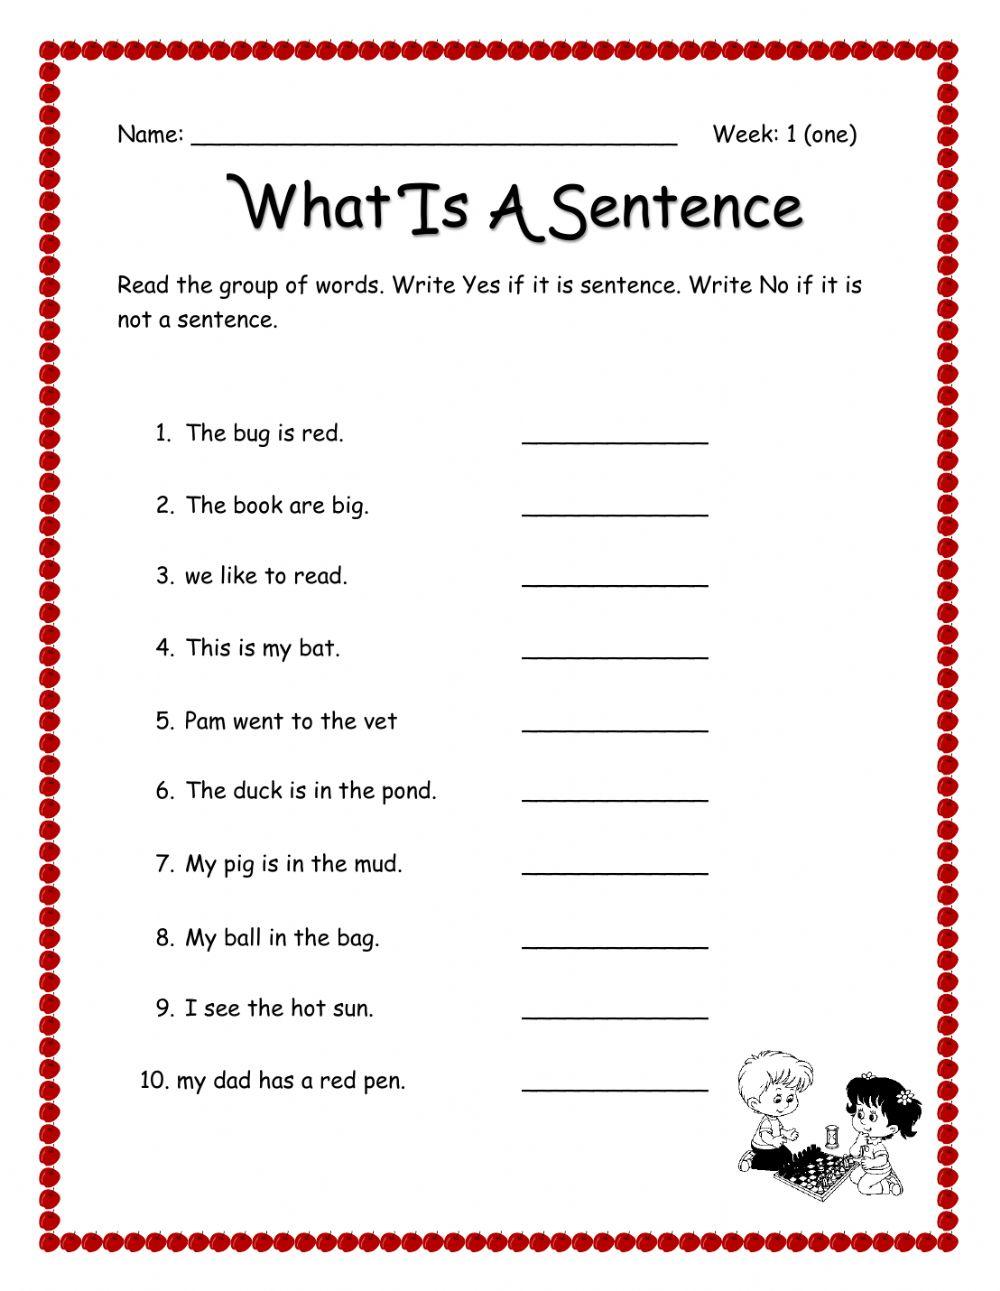 What is a sentence - Grammar